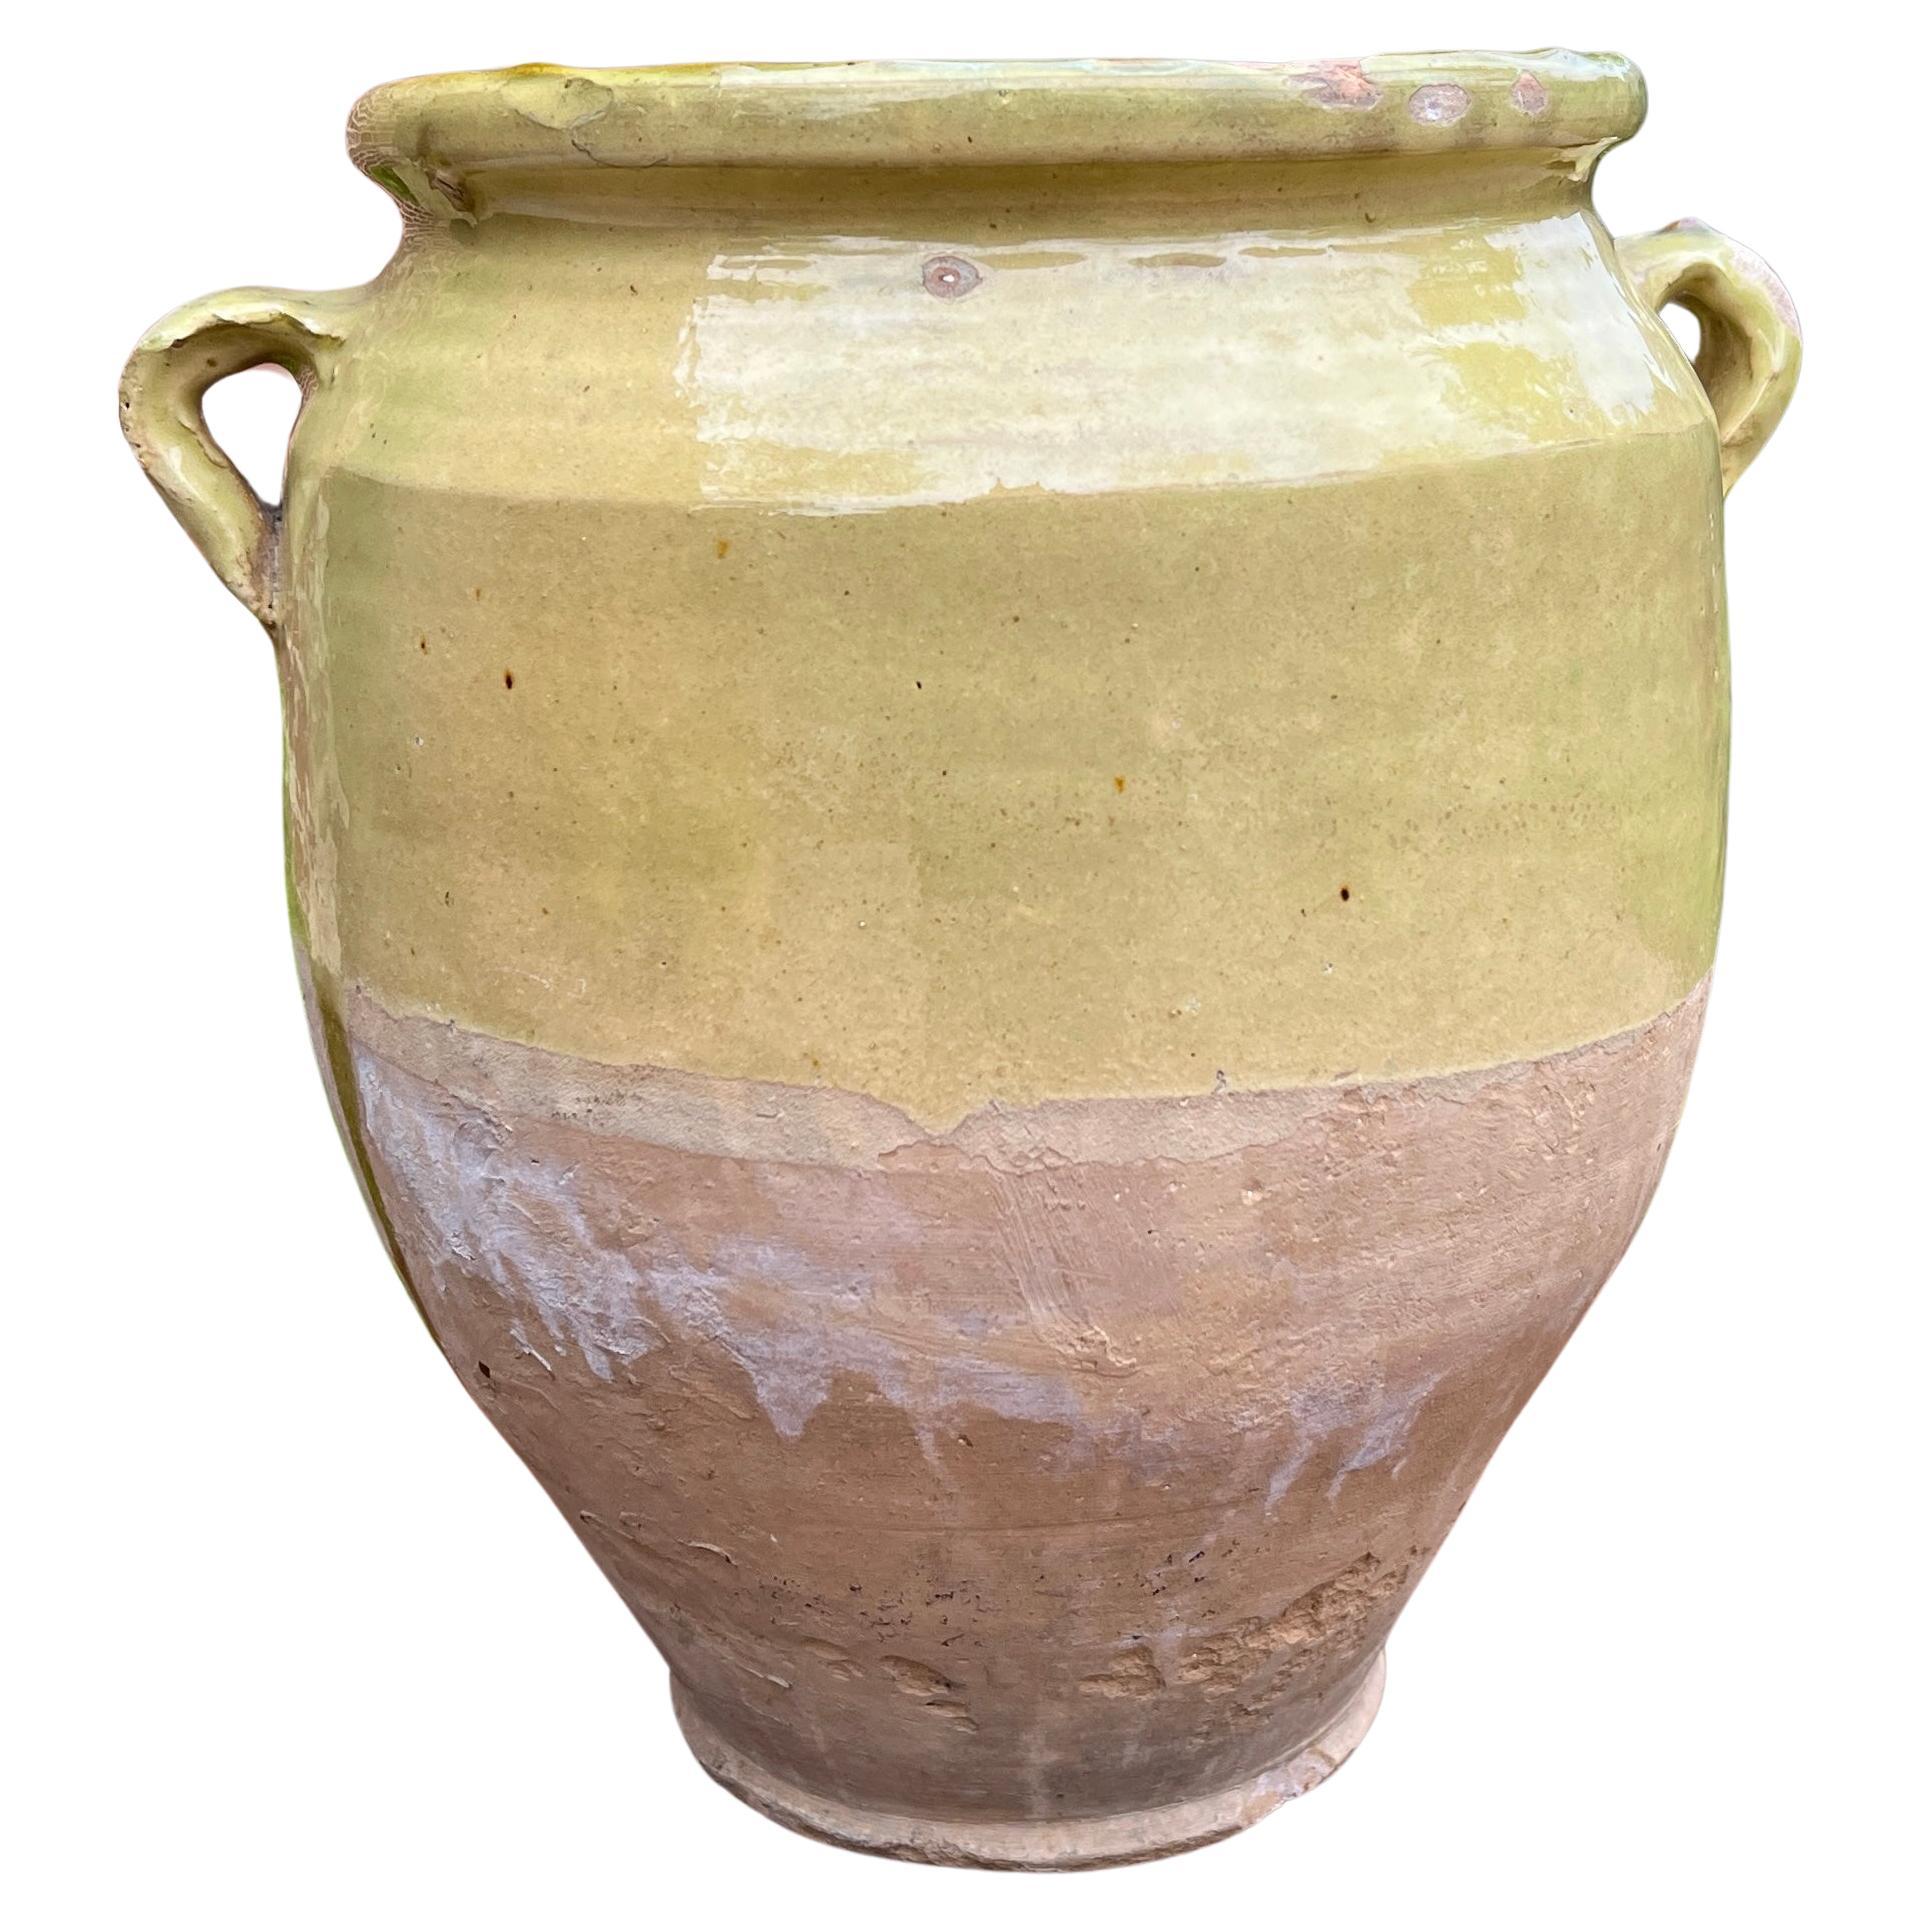 Antike Französisch Land Confit Keramik Krug glasiert grünlich gelb groß #2